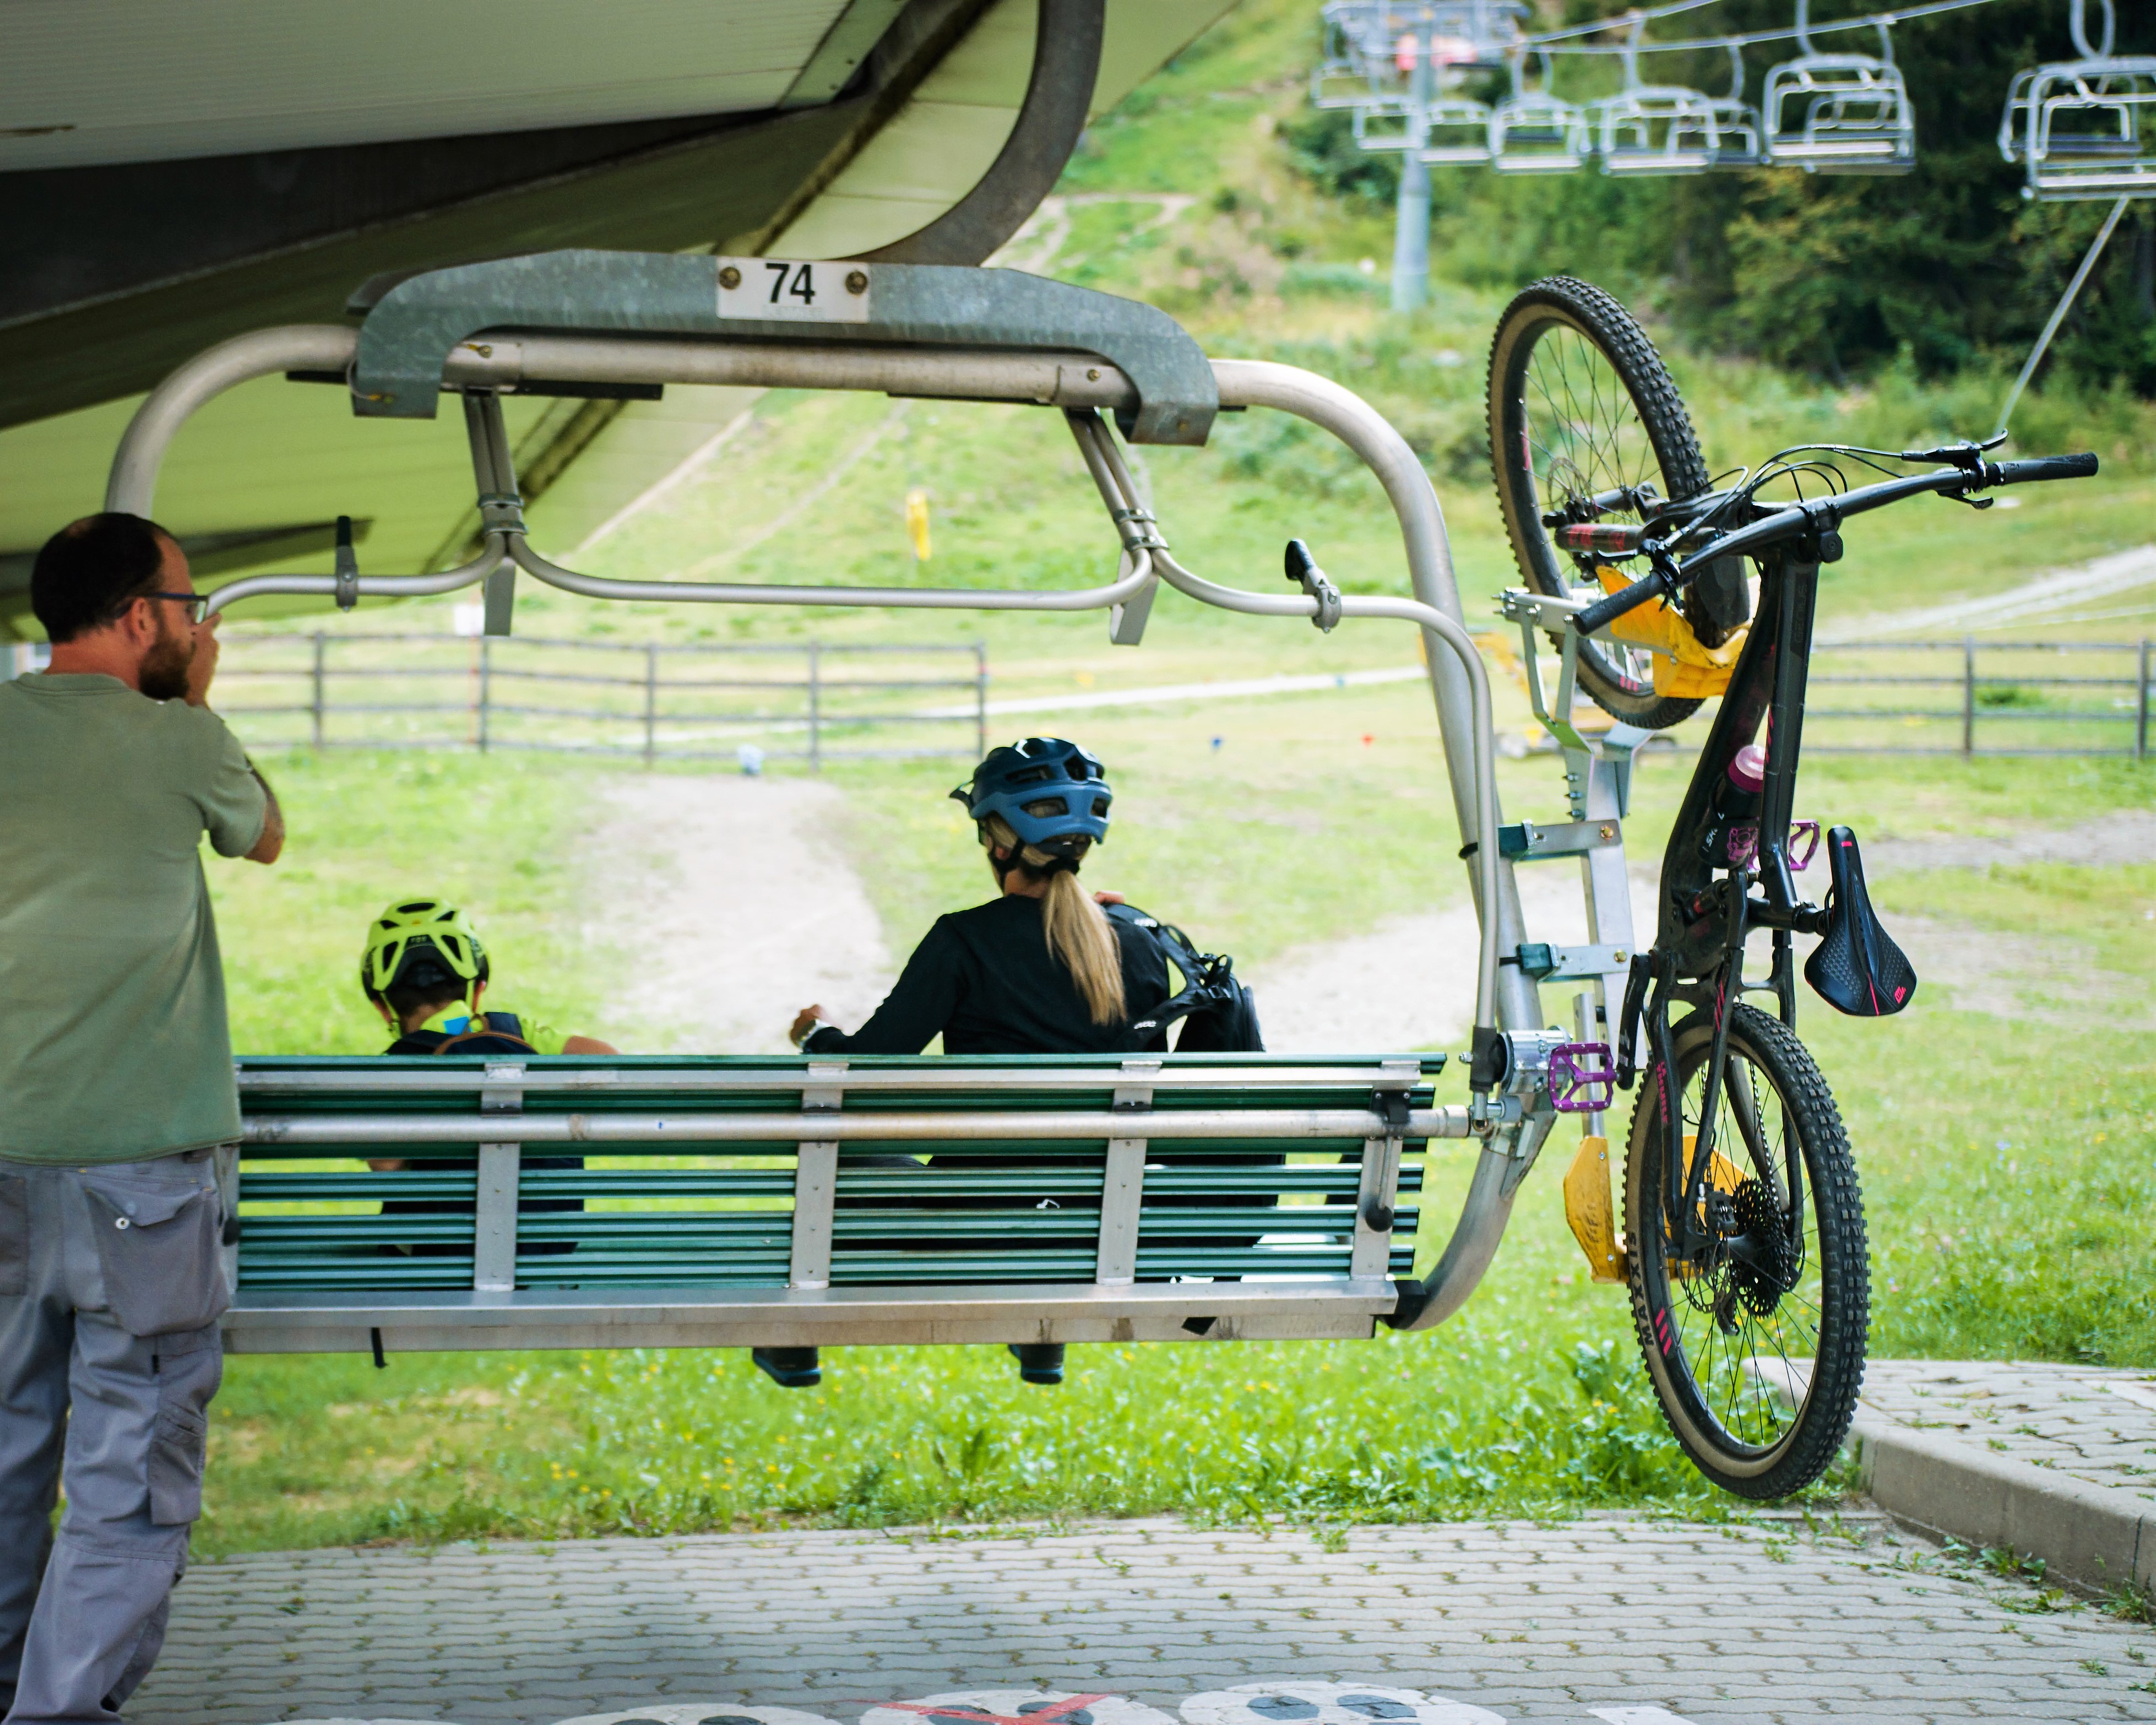 La Thuile Bike World: vacanza a tema bike